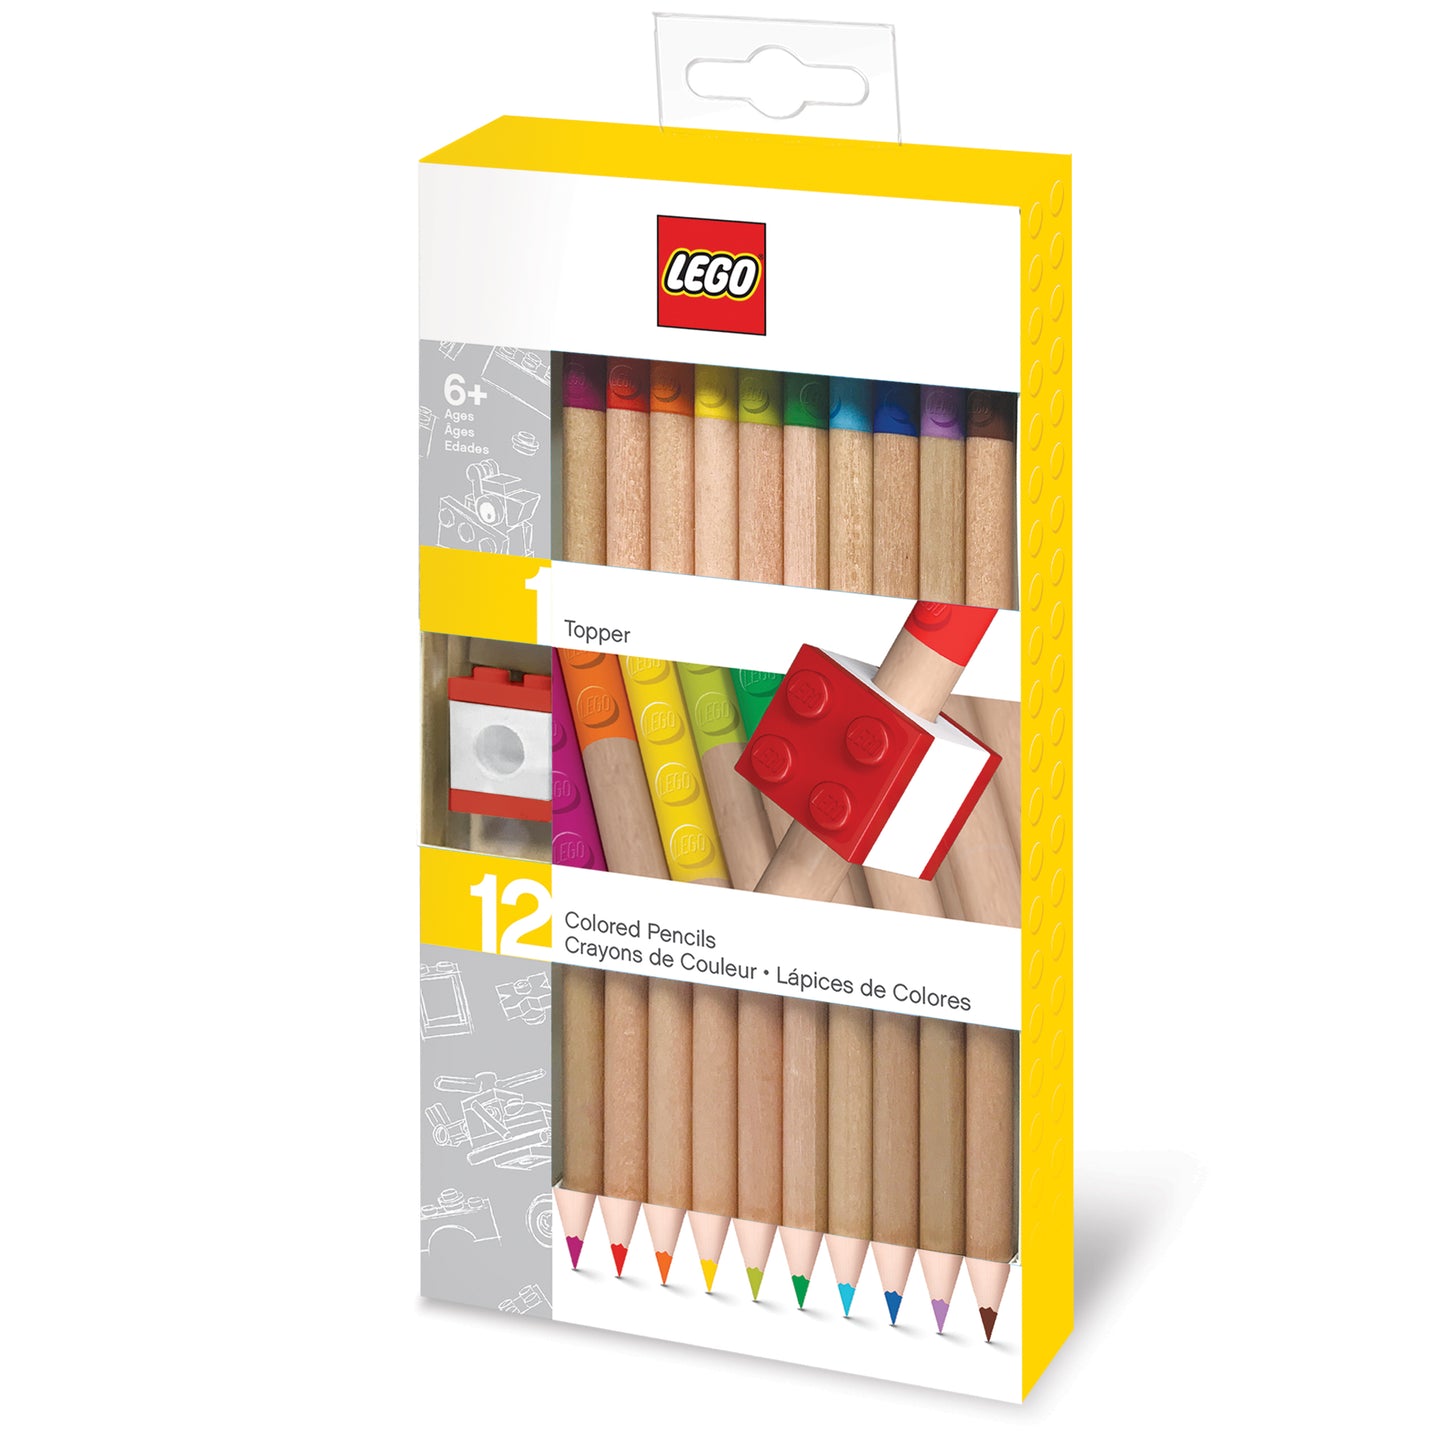 IQ レゴ 2.0シリーズ 文房具 色鉛筆 12色セット 鉛筆トッパー付き (52064)